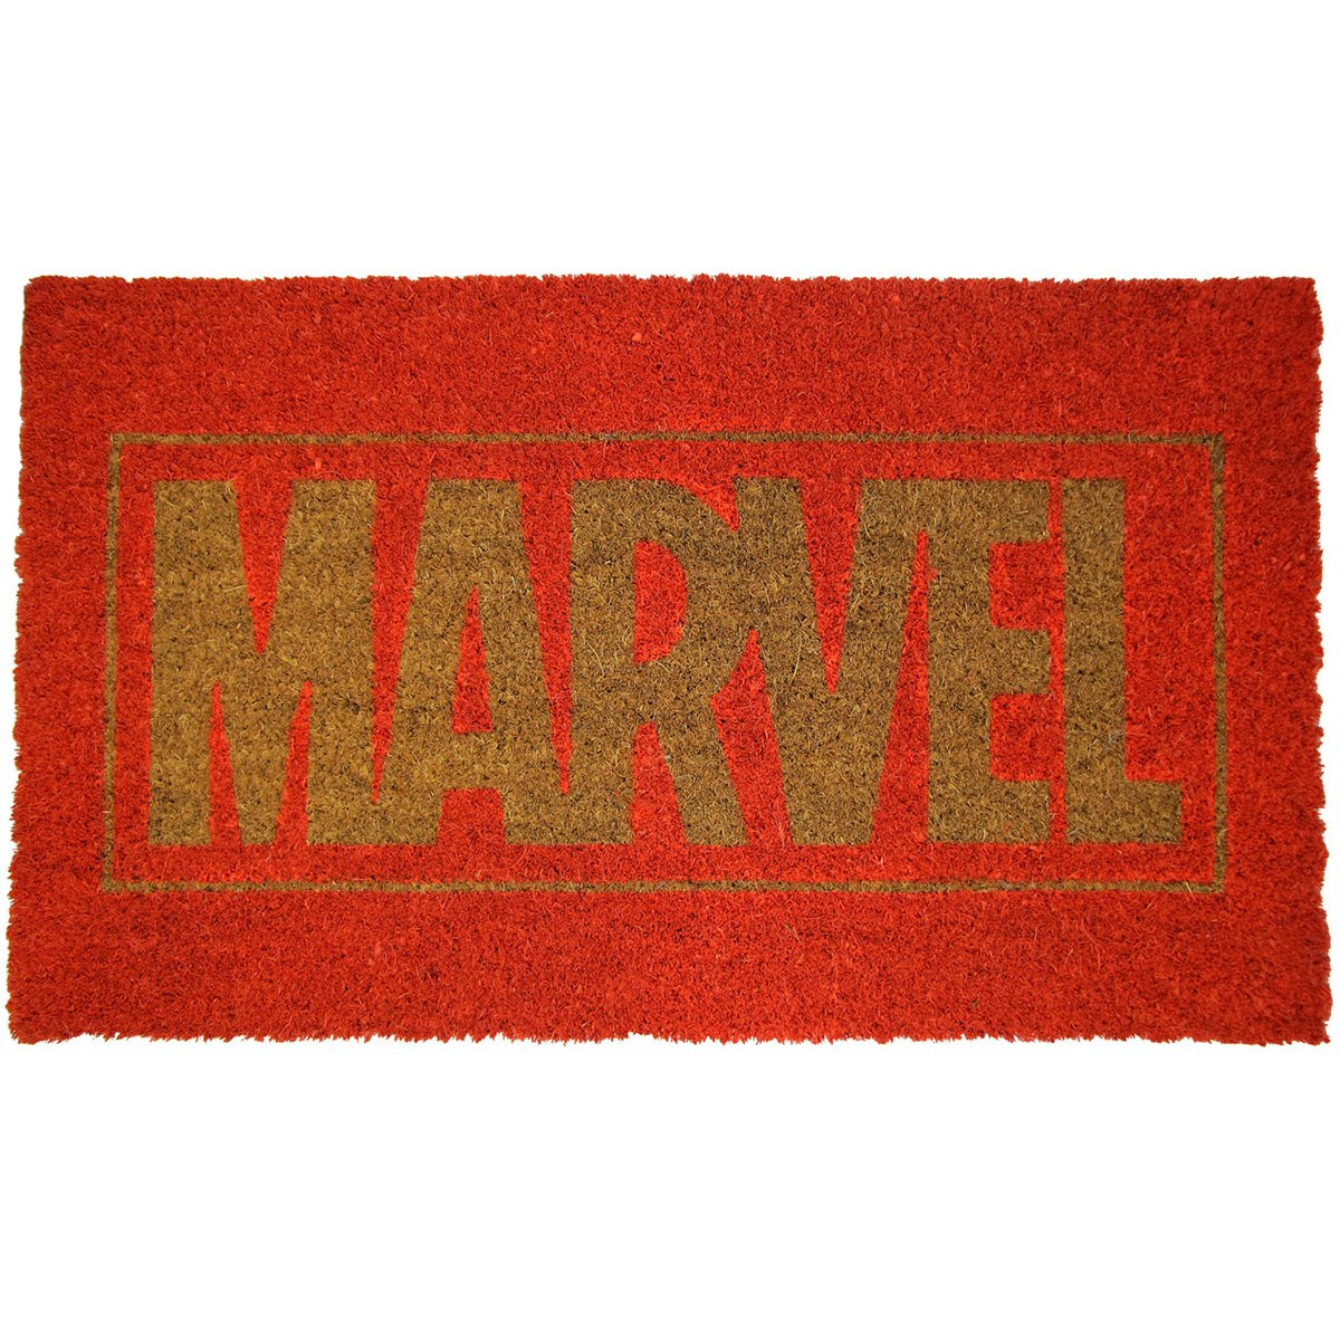 Marvel Doormat